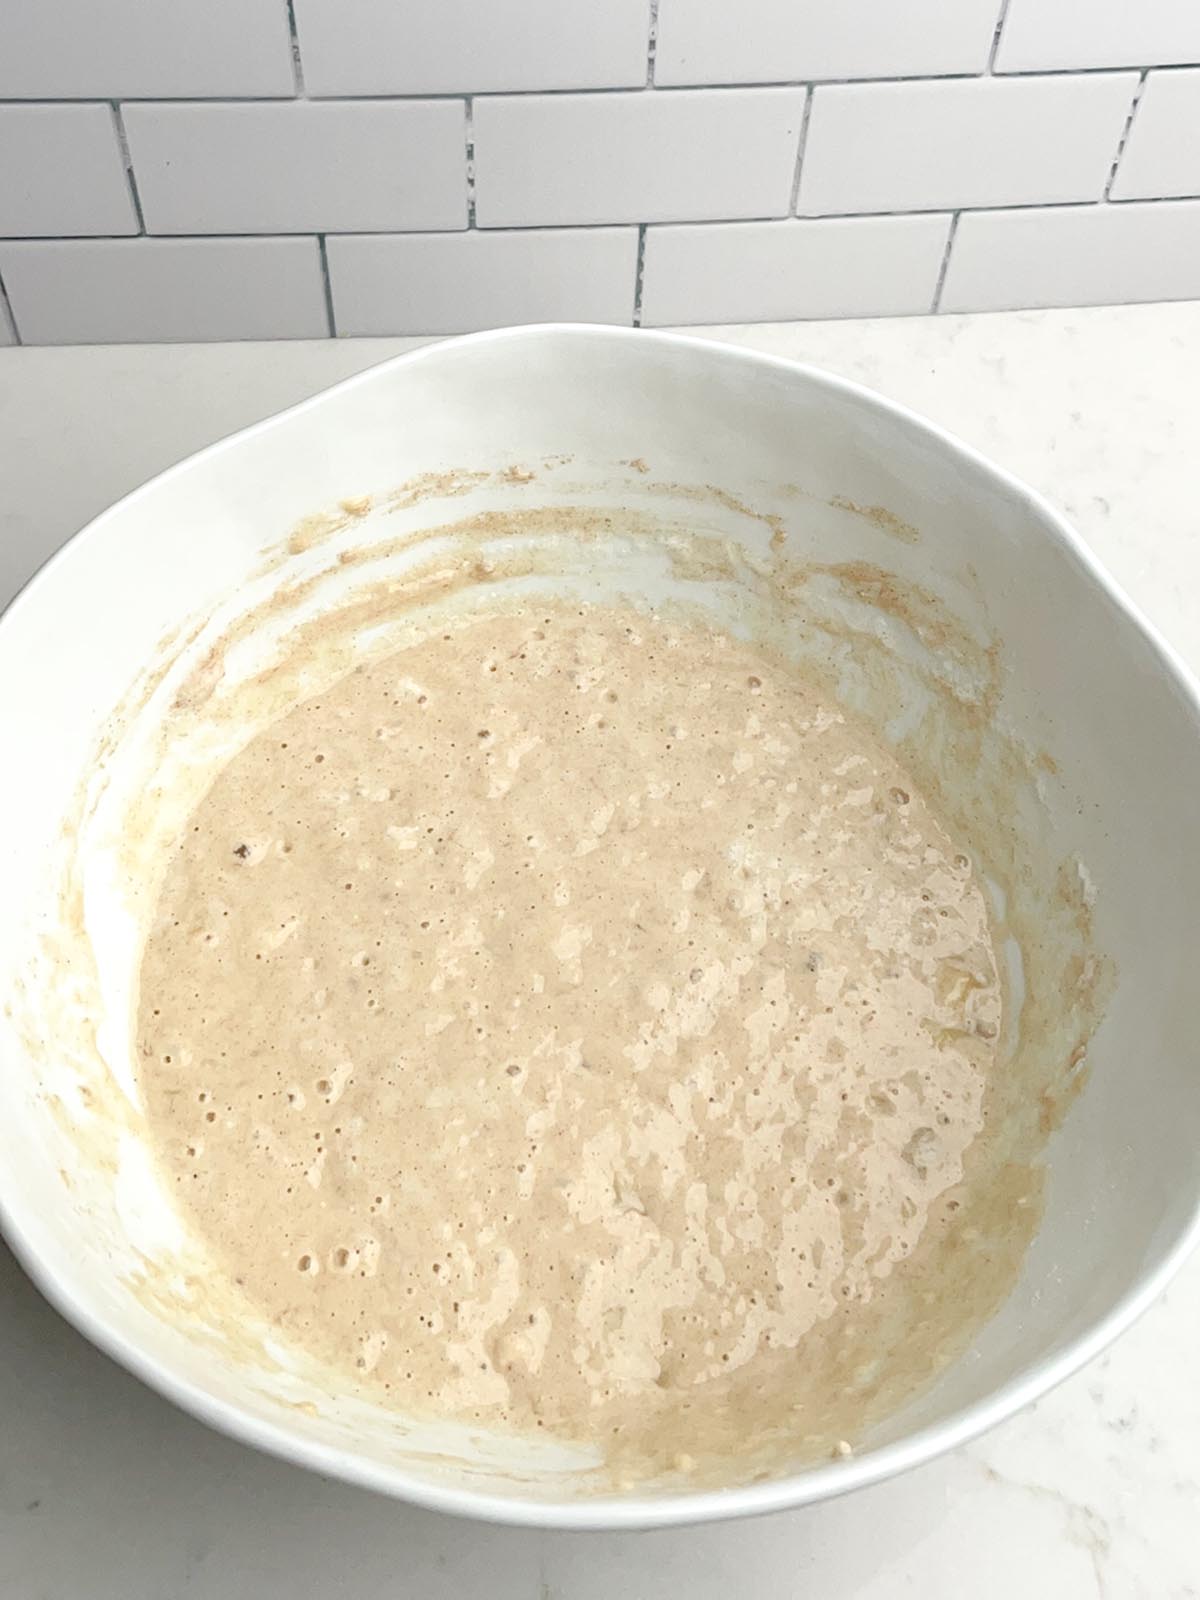 banana pancake batter in white mixing bowl.